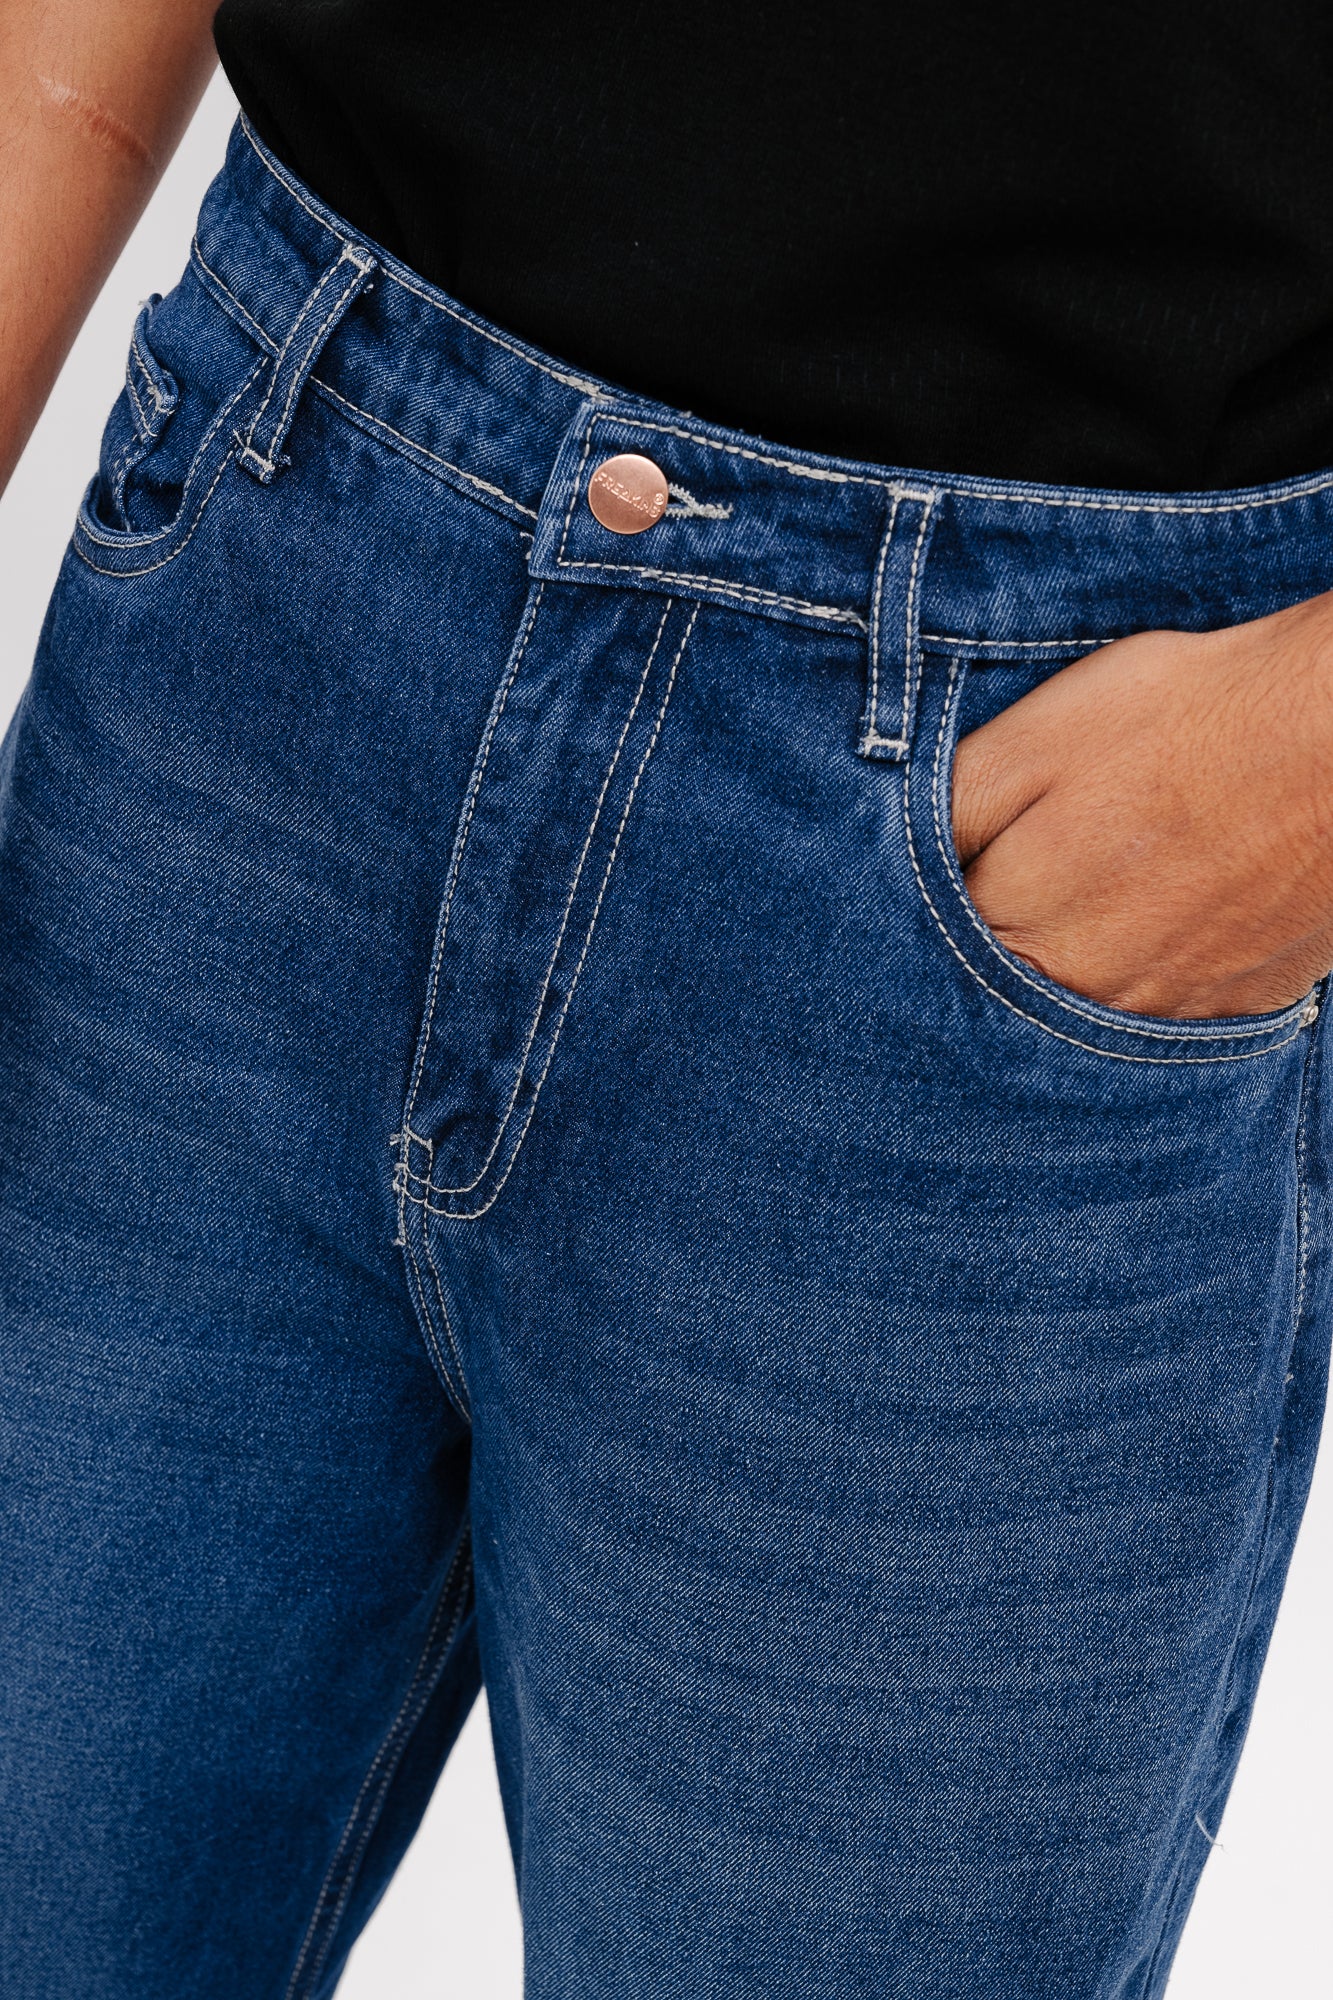 Basic straight men's jeans